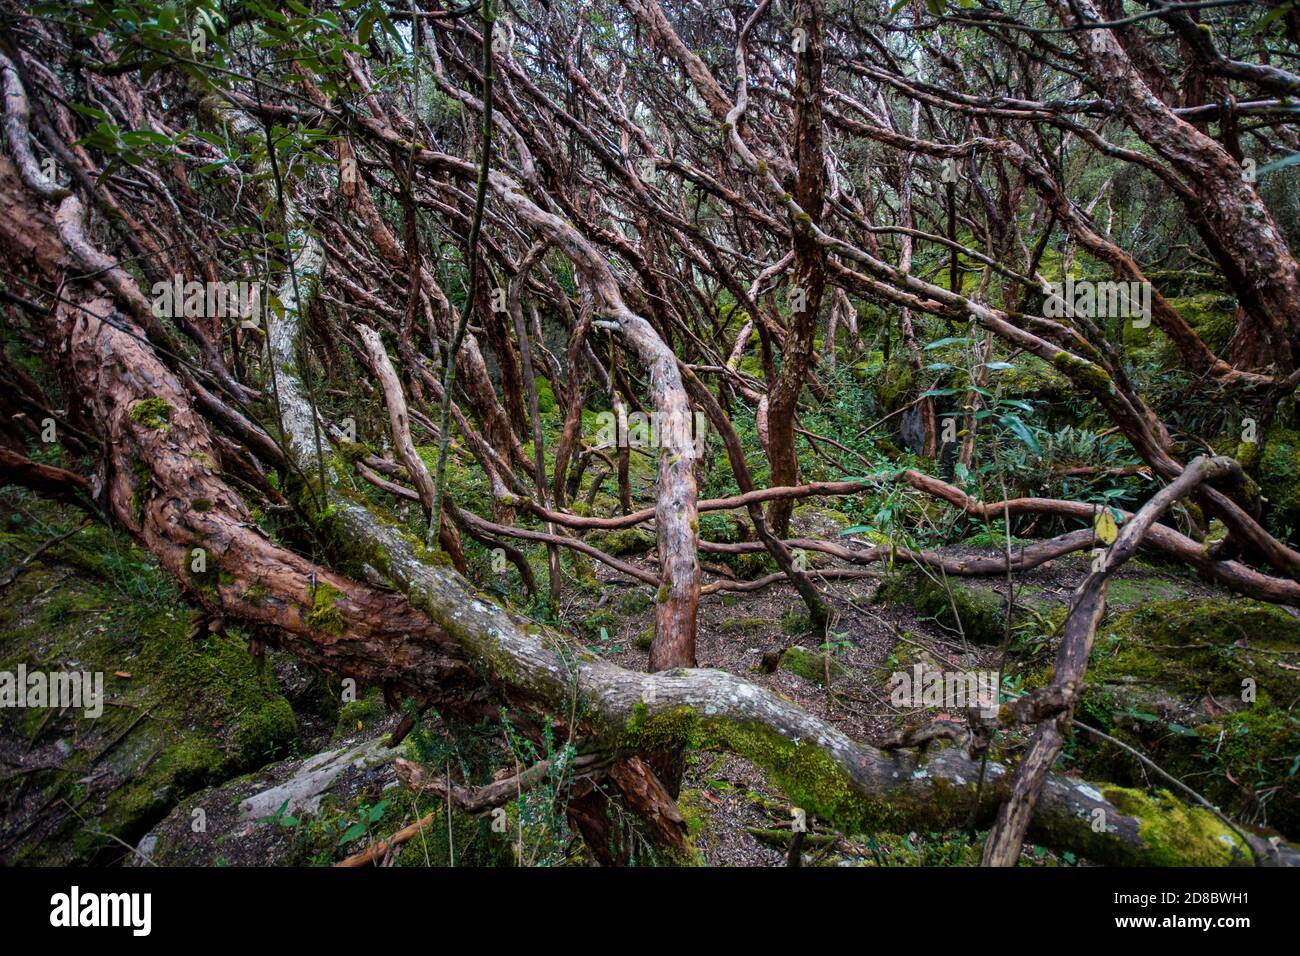 Un bosque de polilepis en el Parque Nacional el Cajas, este es un ecosistema amenazado, la mayoría de los cuales se ha perdido debido a la destrucción del hábitat. Foto de stock